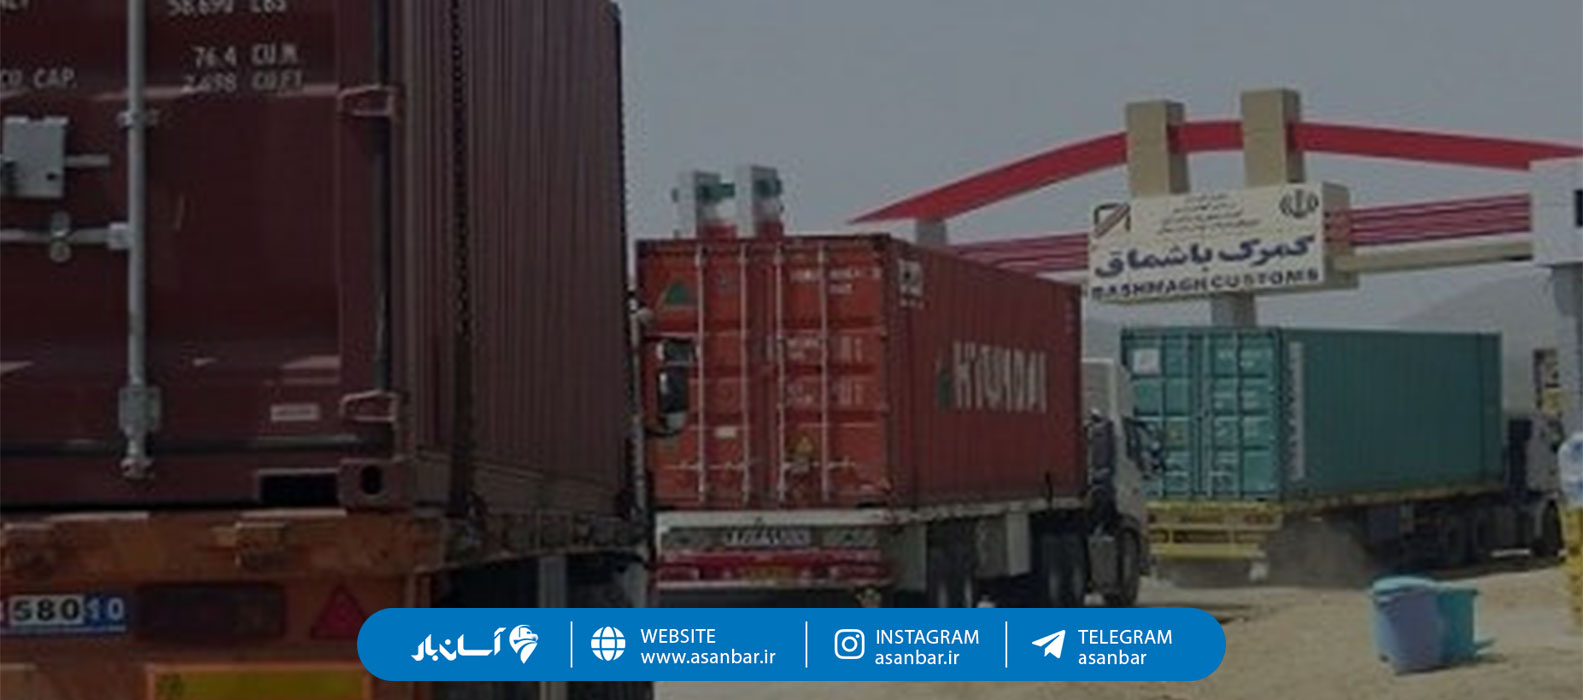 بخش نامه پرداخت حق توقف کامیونهای ایرانی و خارجی